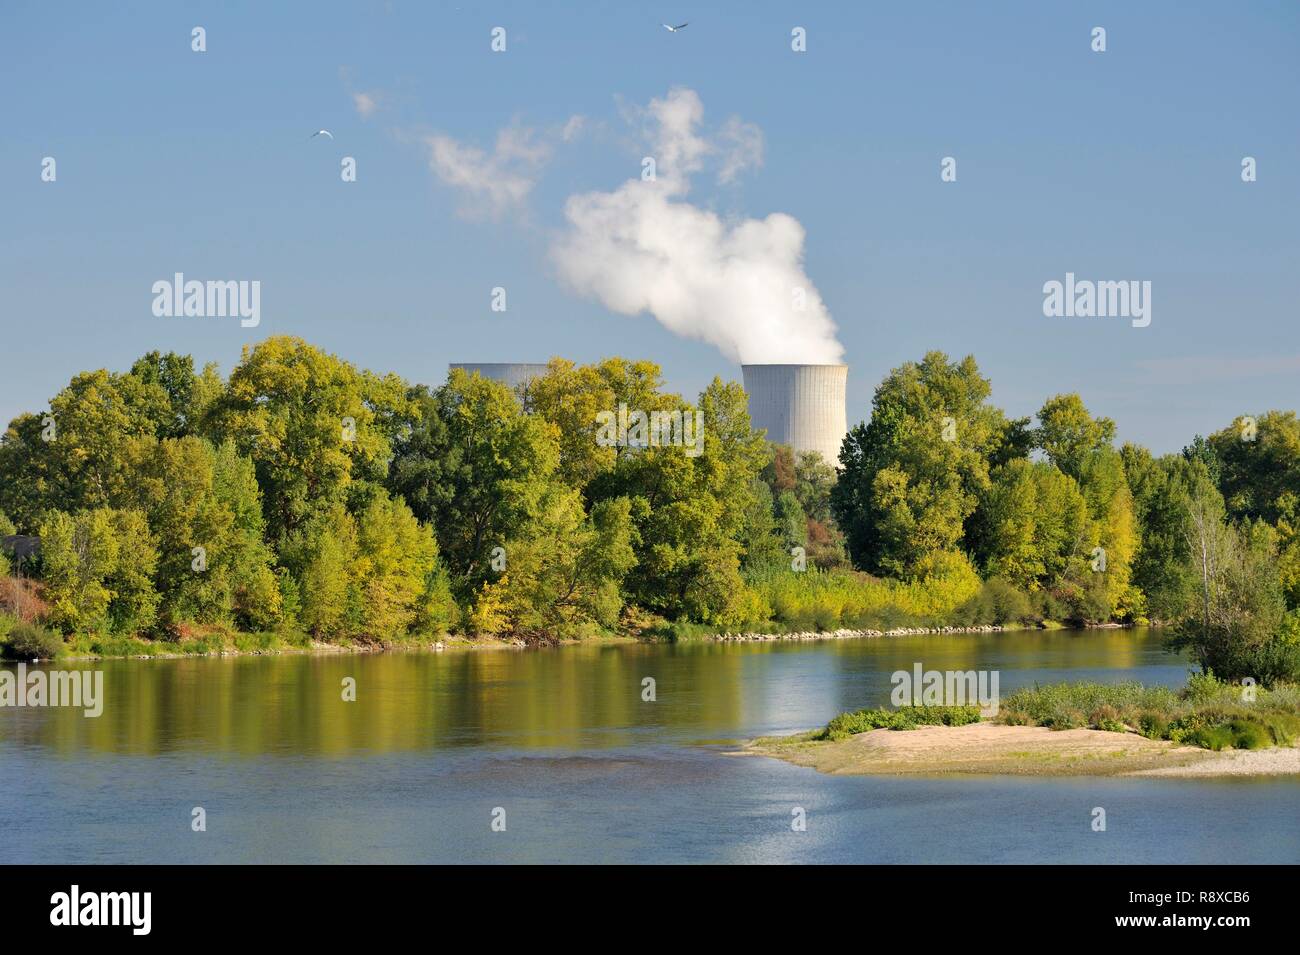 France, Loir et Cher, Saint Laurent Nouan, nuclear power plant on the banks of the Loire Stock Photo